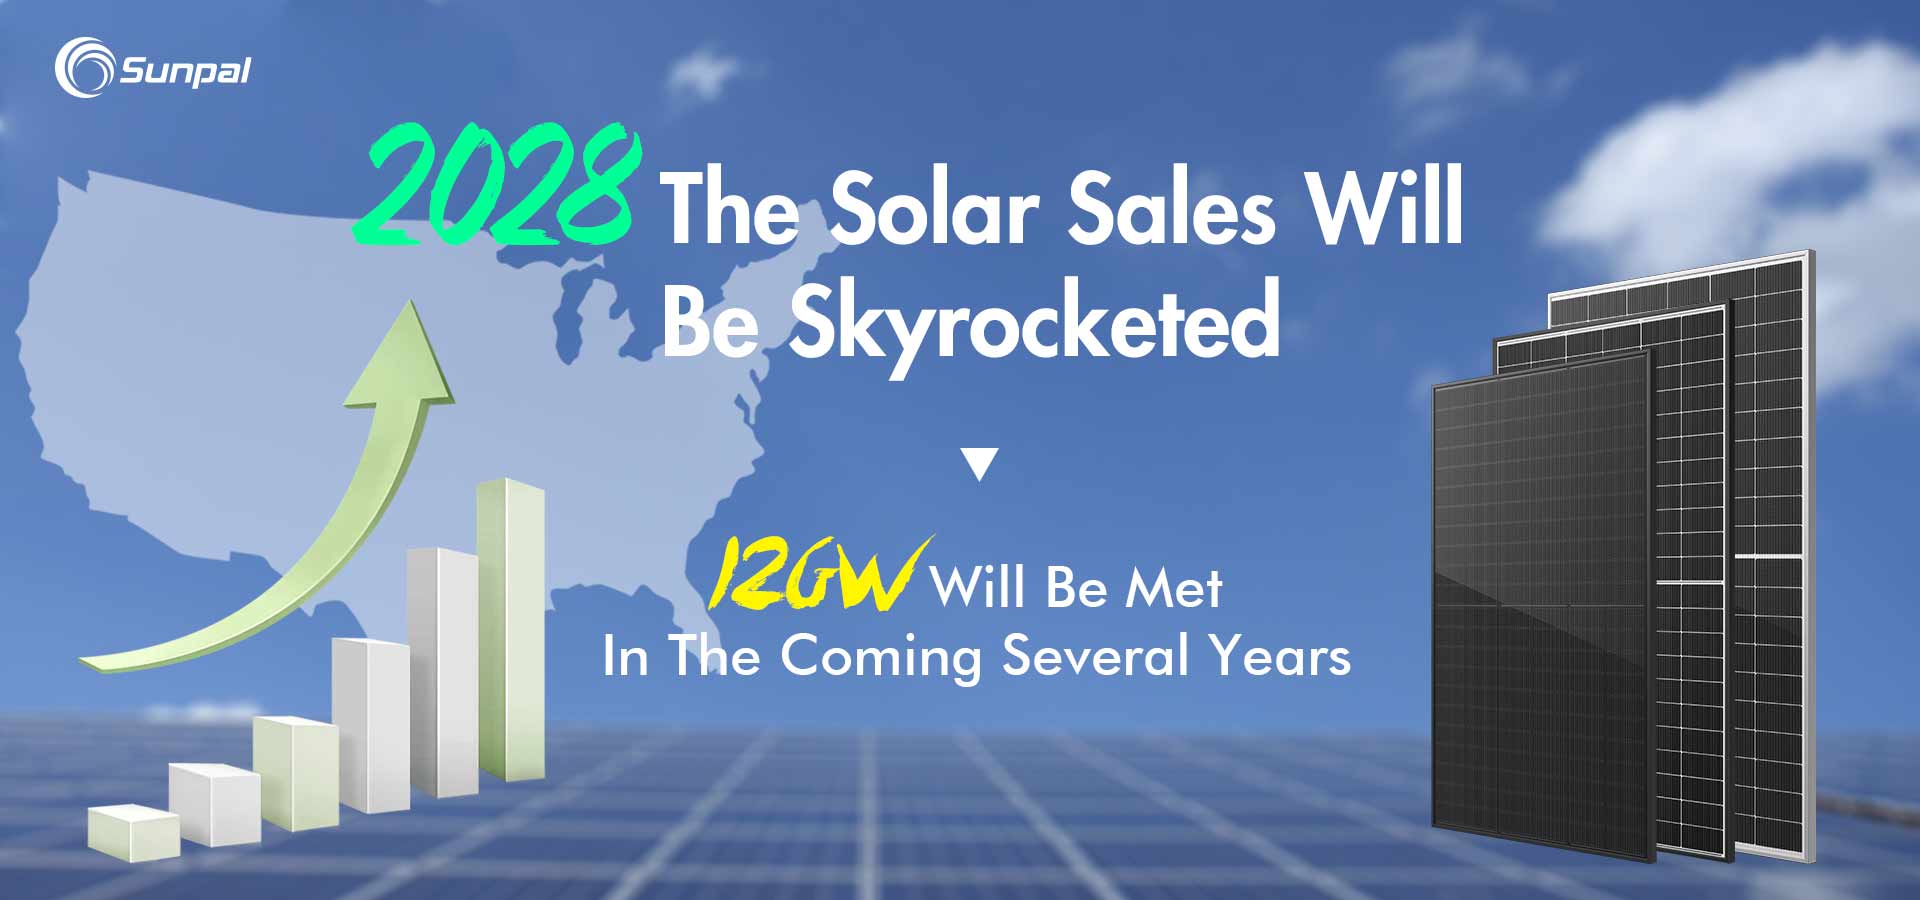 Doanh số bán năng lượng mặt trời thương mại sẽ bùng nổ khi thị trường Hoa Kỳ đạt 14 GW vào năm 2028